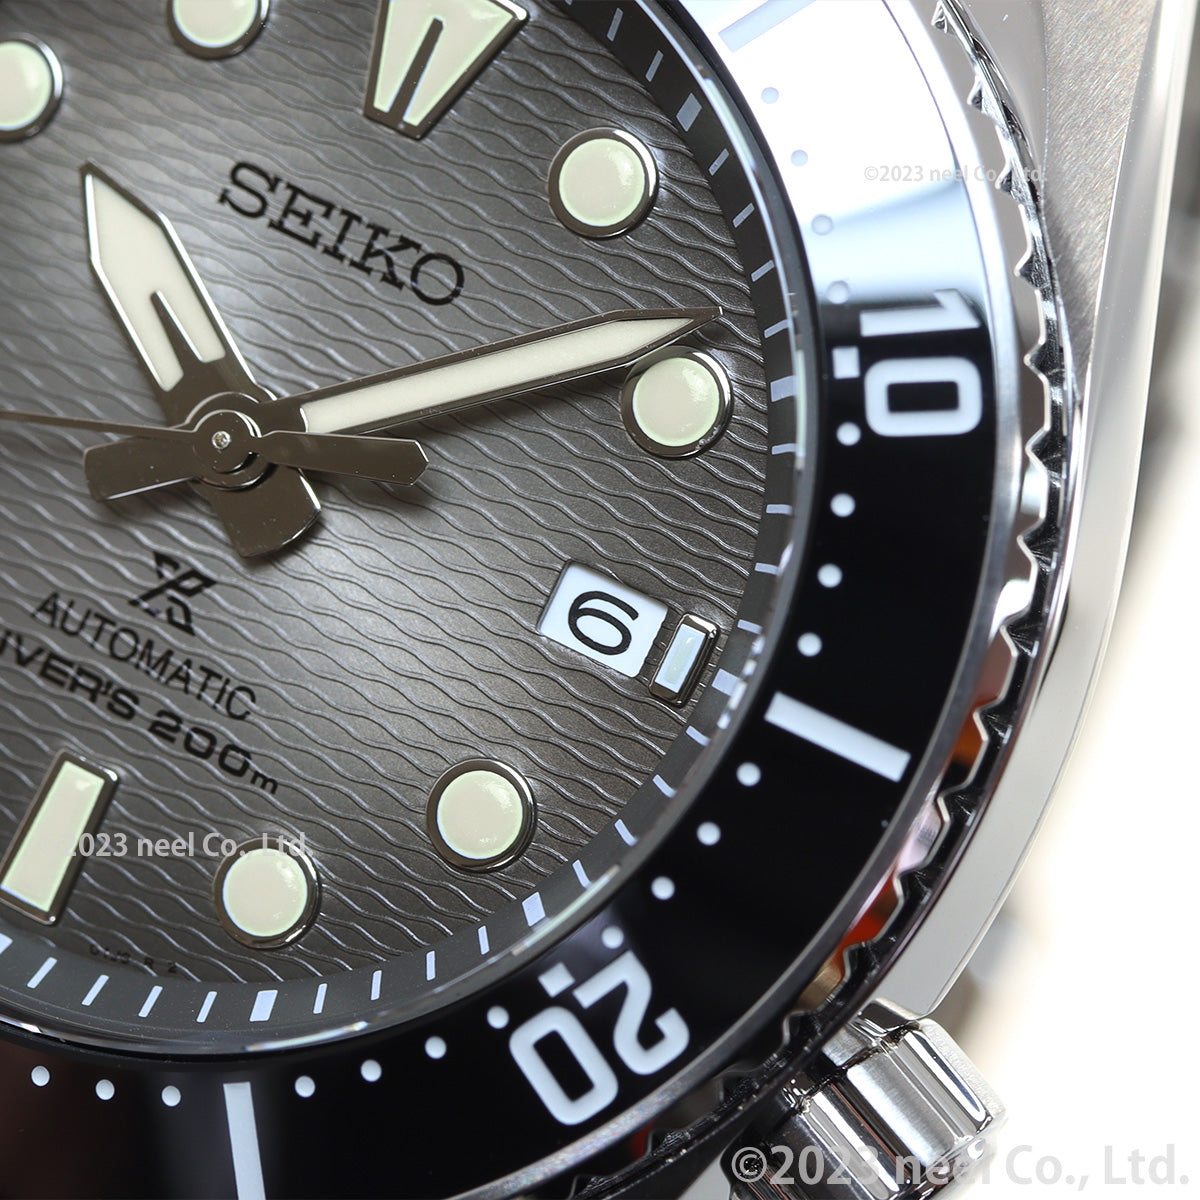 セイコー プロスペックス SEIKO PROSPEX ダイバースキューバ メカニカル 自動巻き コアショップ専用 流通限定 腕時計 メンズ SBDC177